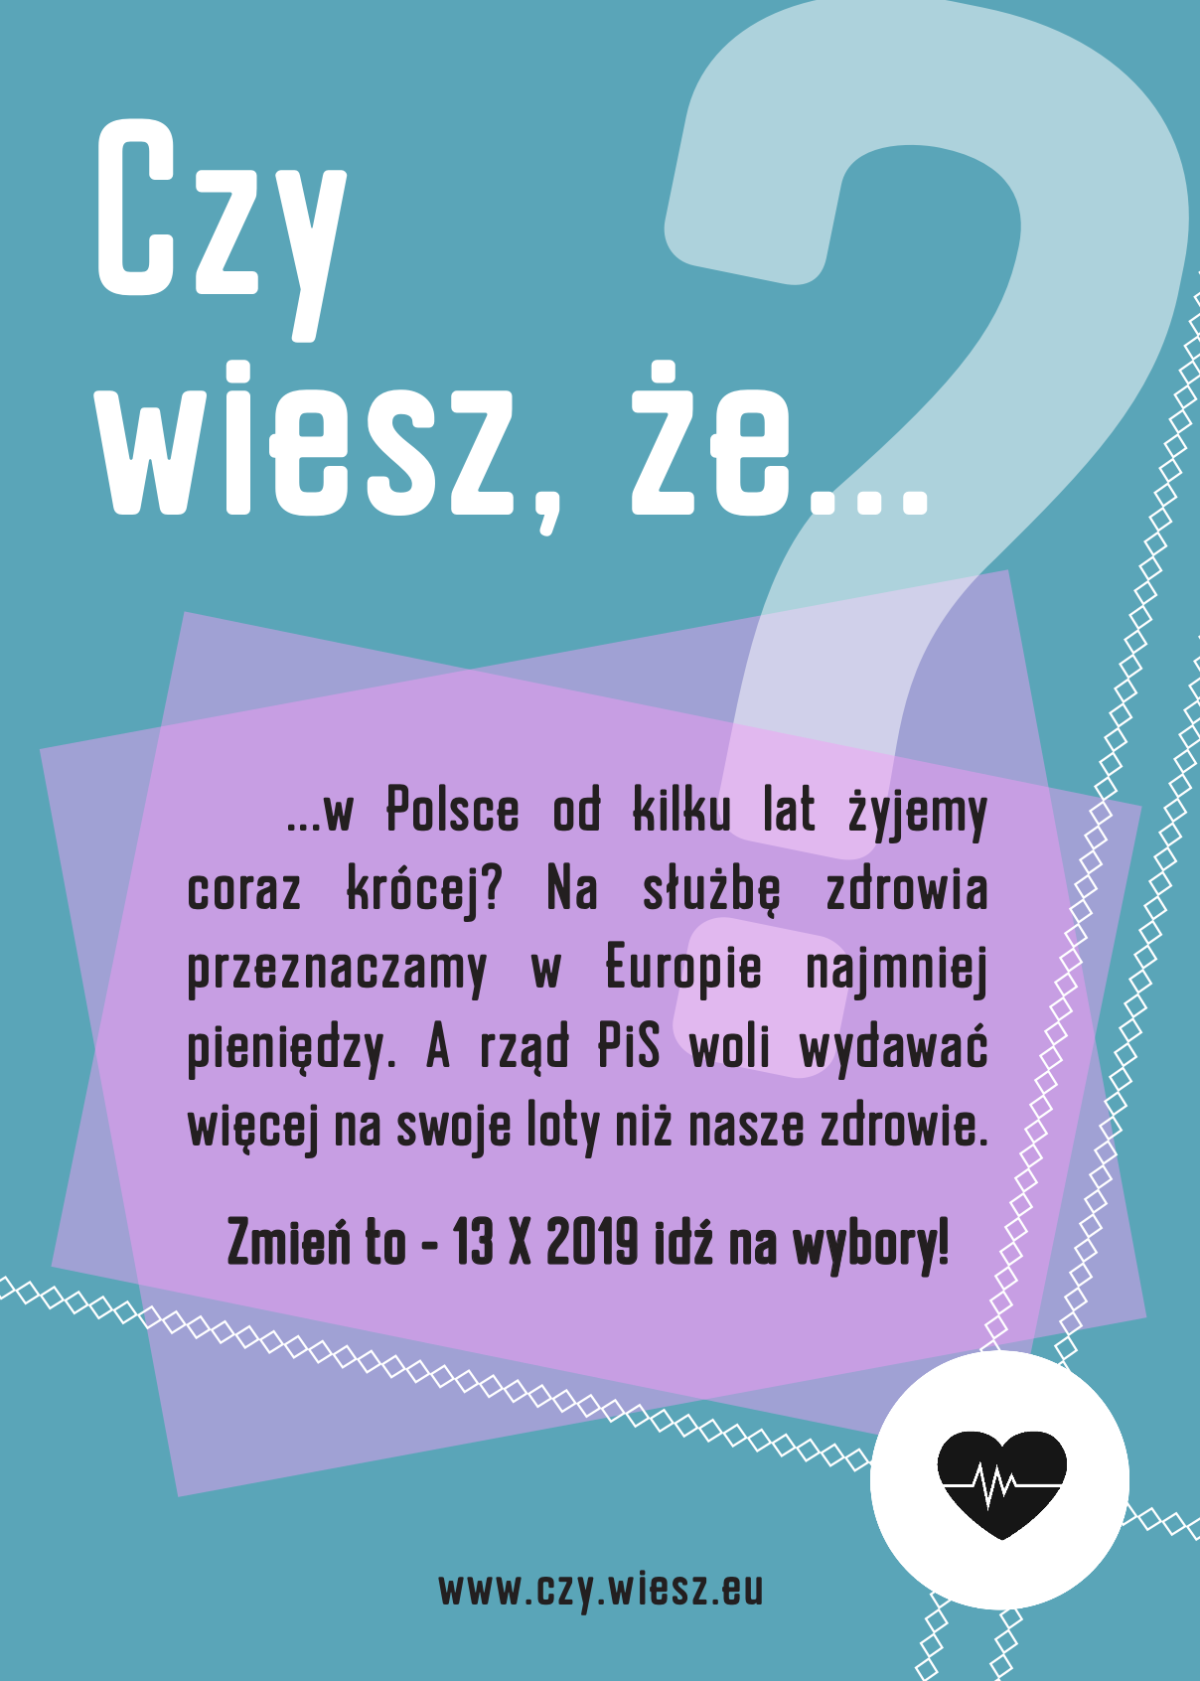 Czy wiesz, że w Polsce od kilku lat żyjemy coraz krócej ?